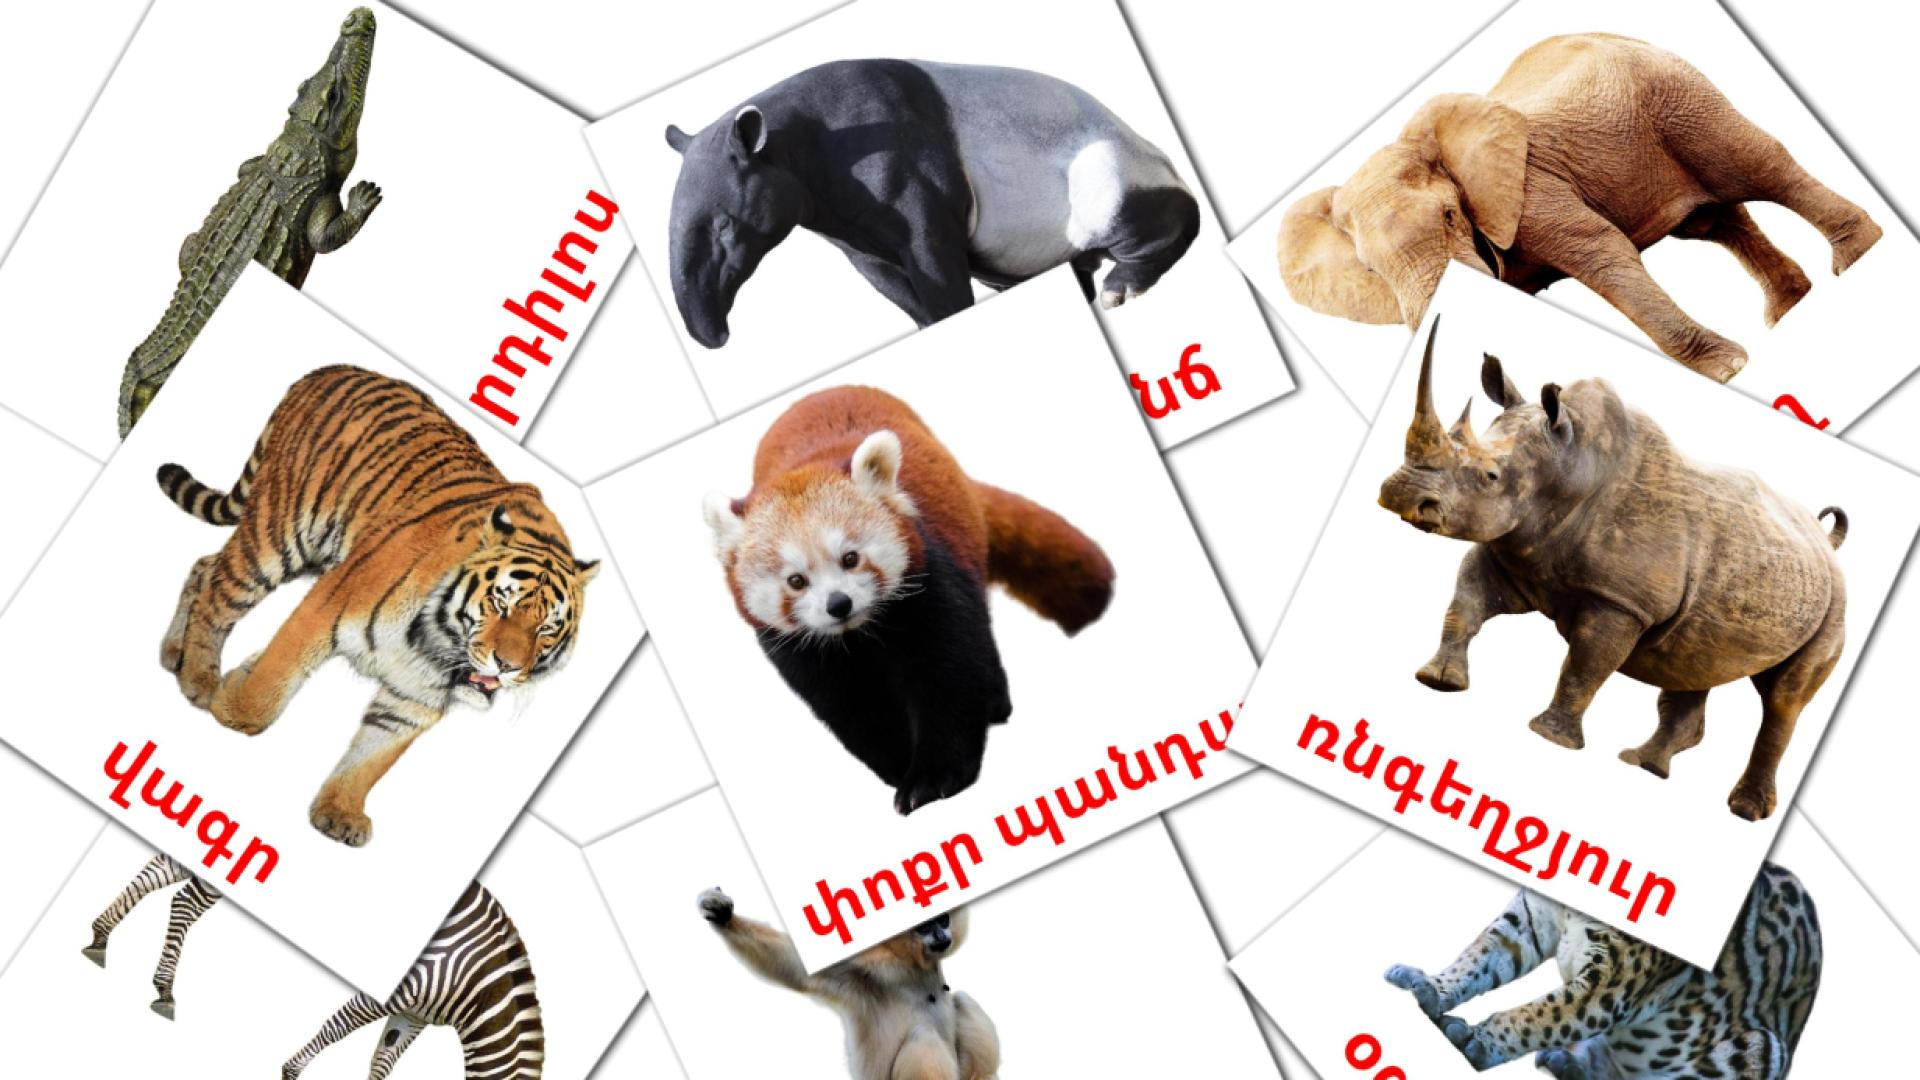 Jungle dieren - armeensee woordenschatkaarten